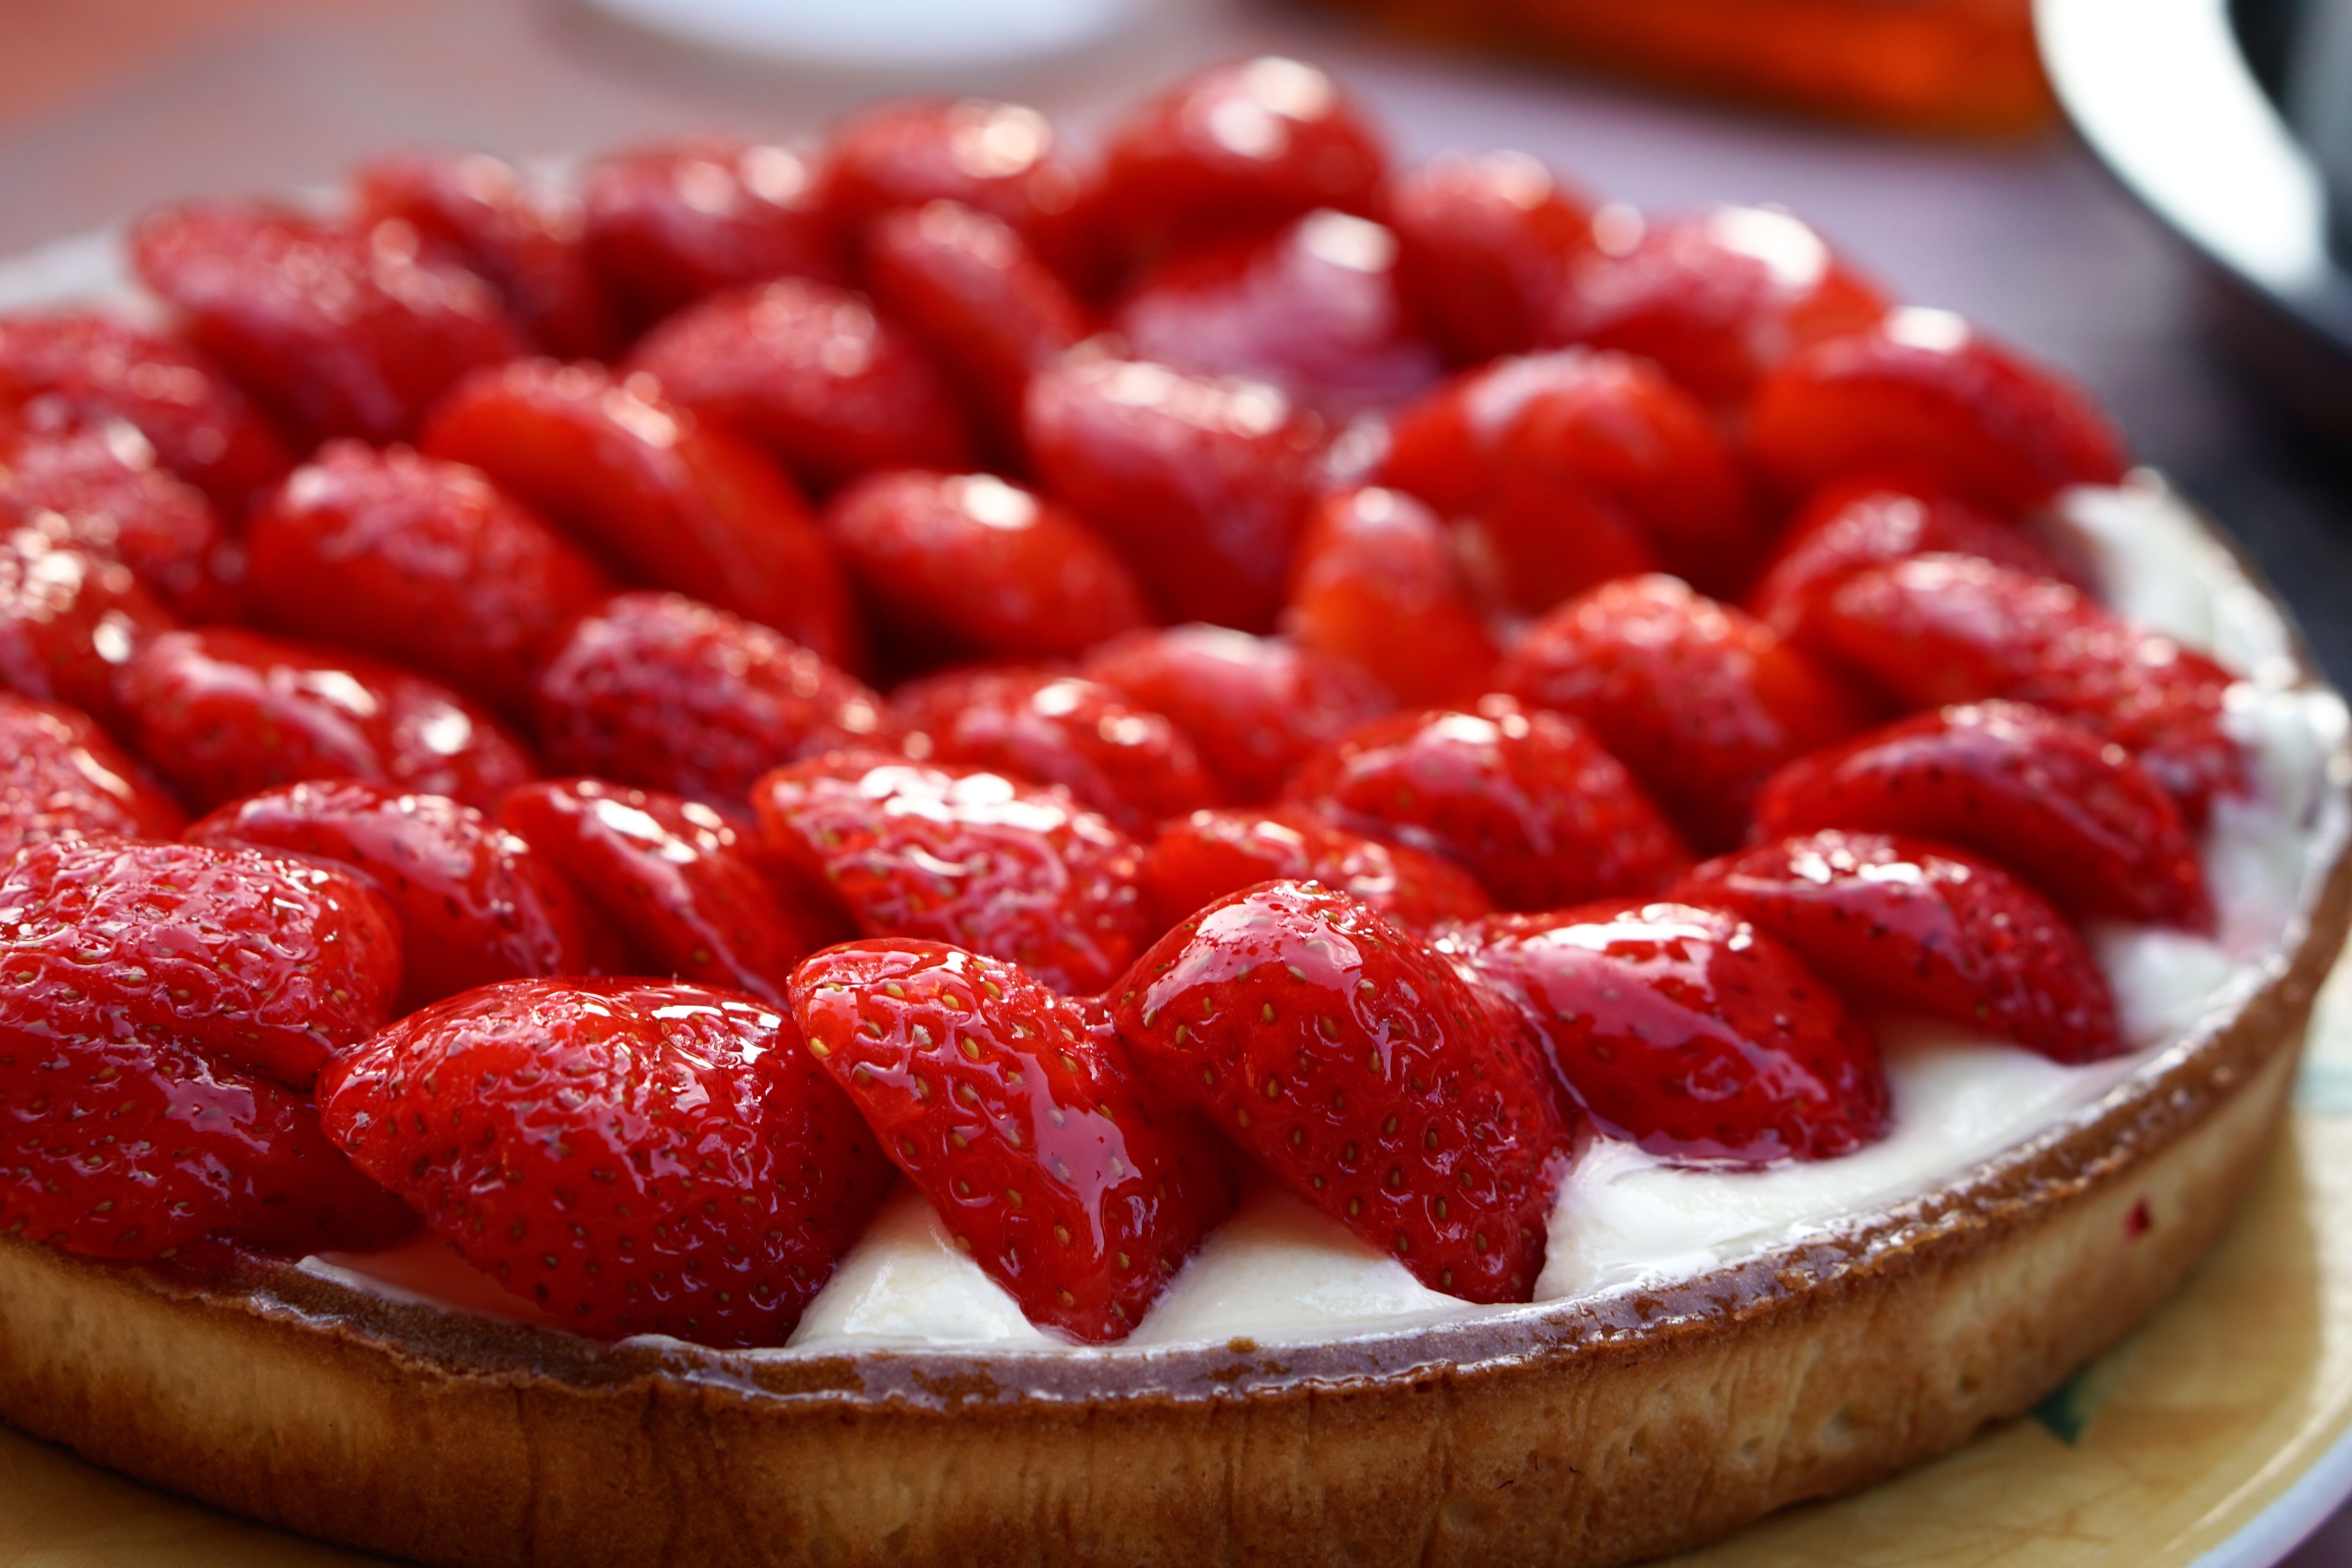 Strawberry Cream Cheese Pie, Oh My!